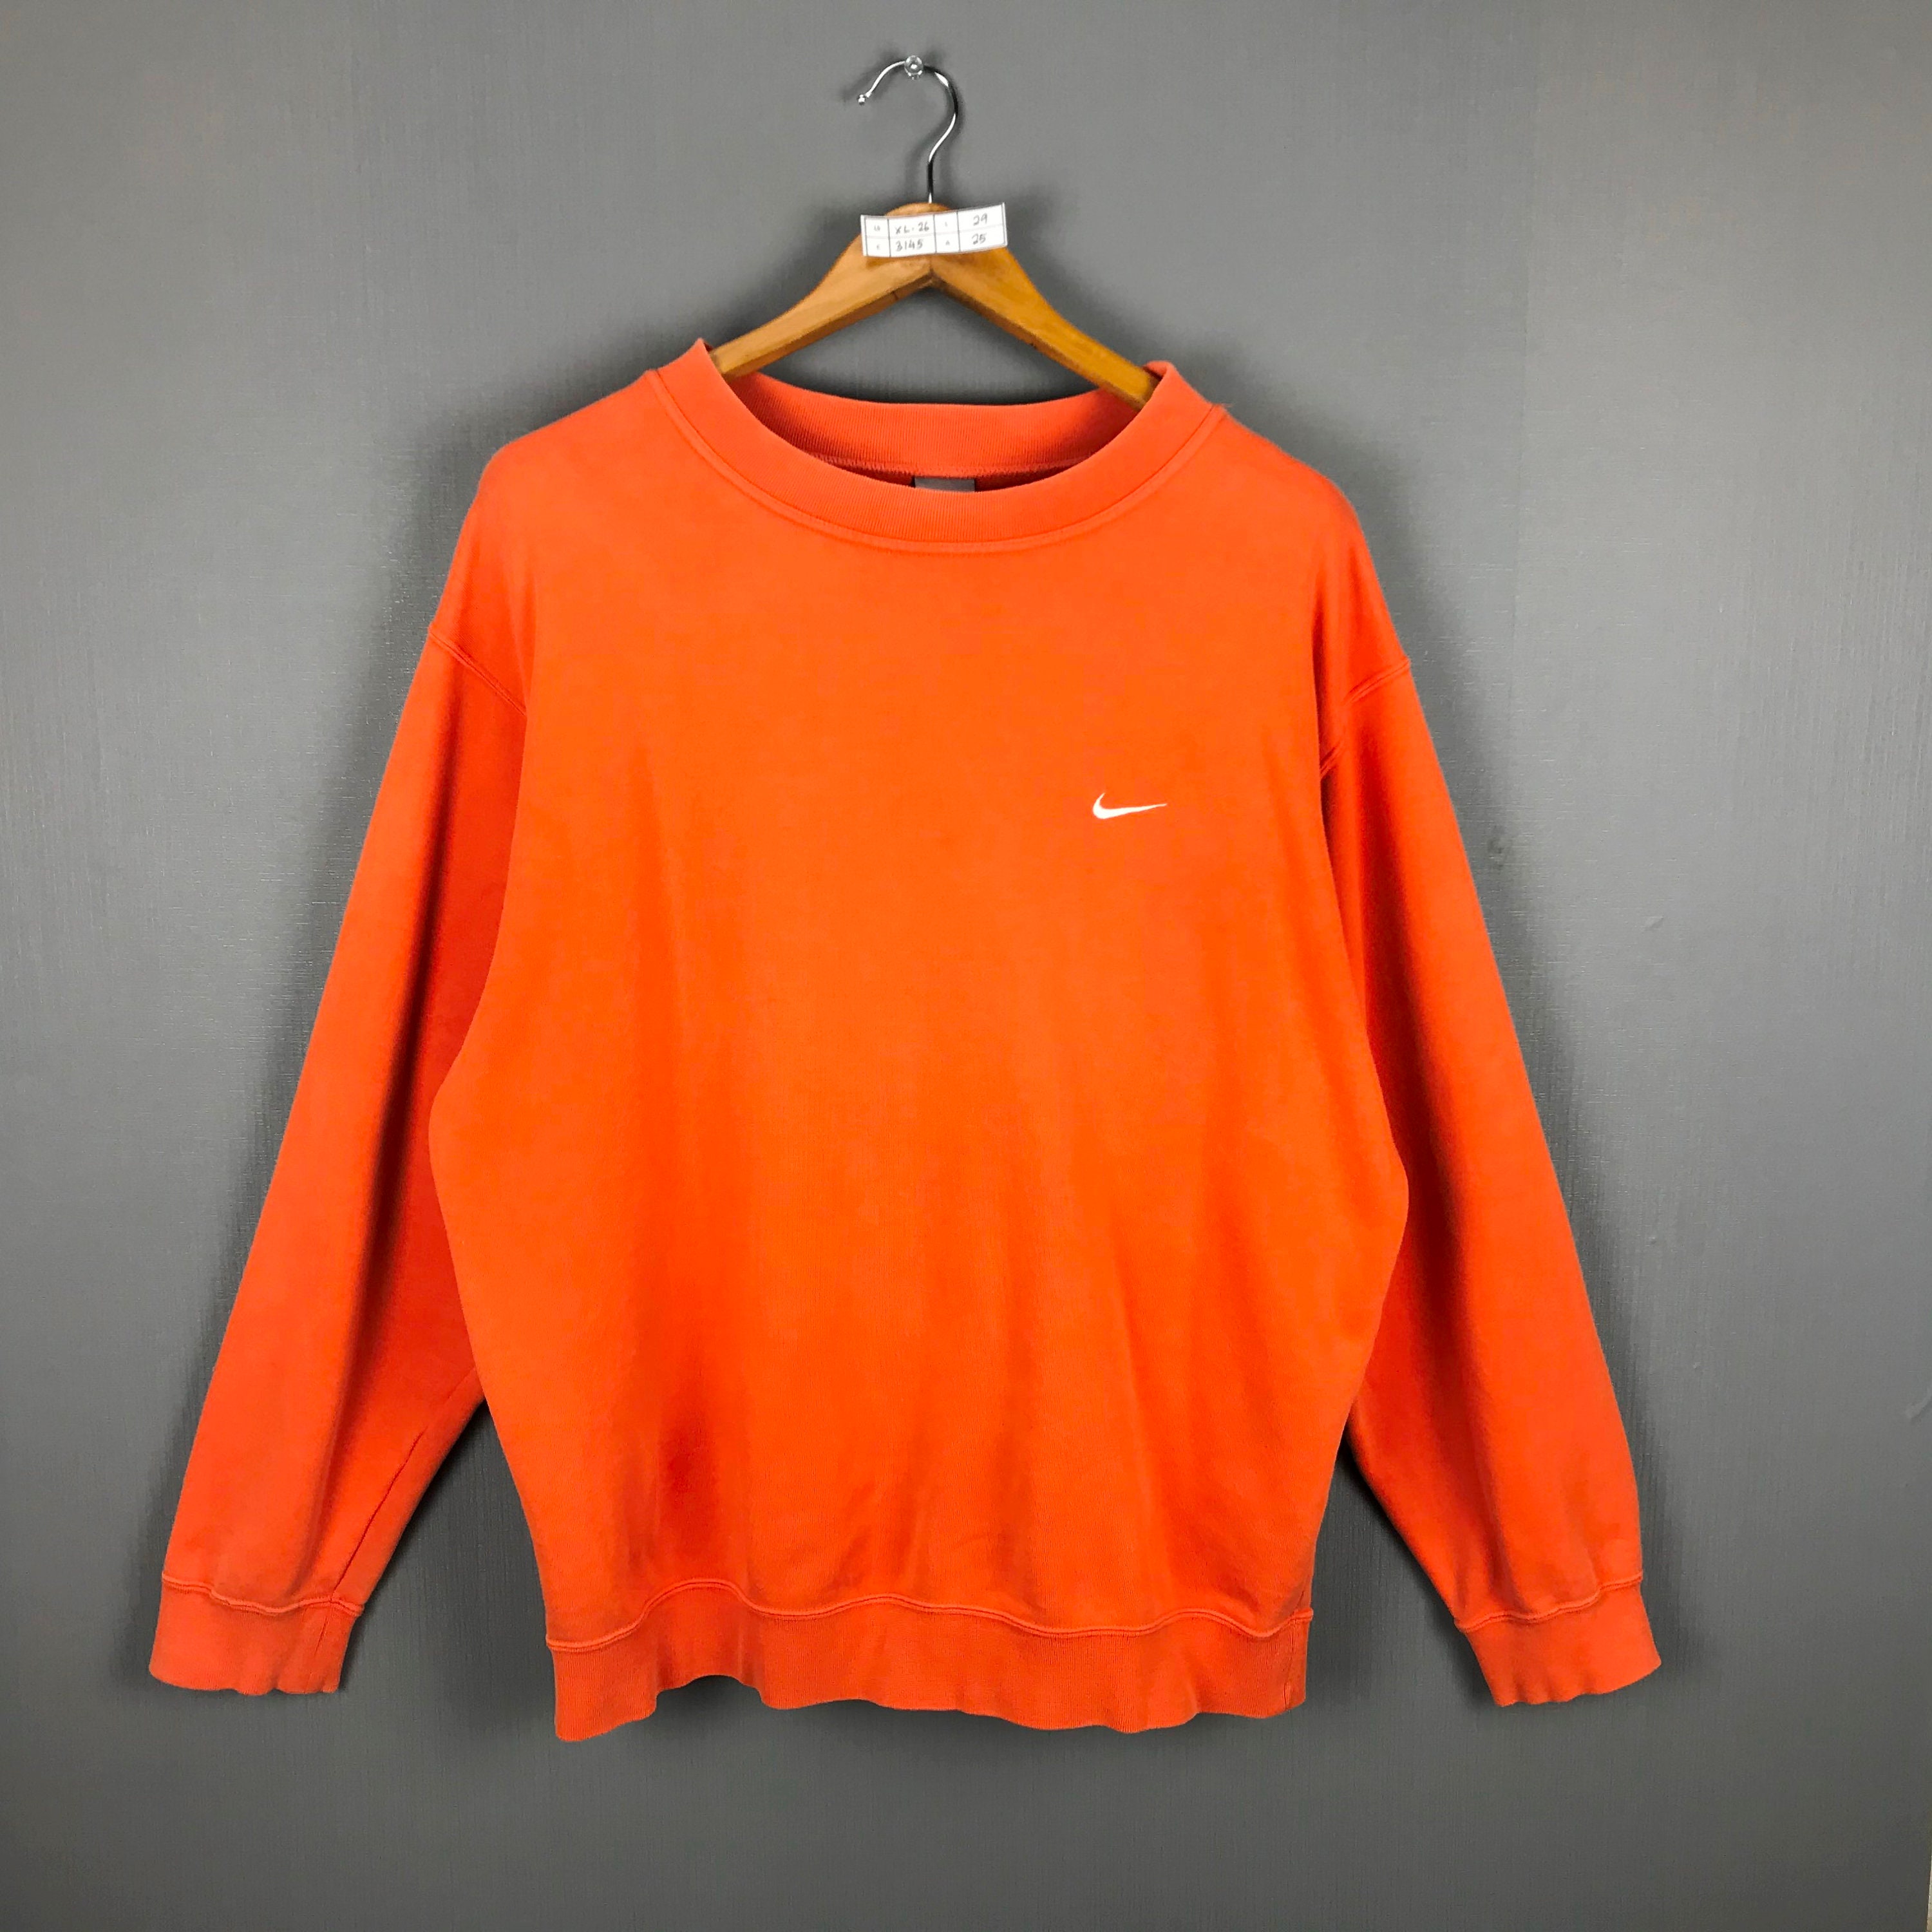 NIKE Sweatshirt X-Large Vintage Nike Swoosh Orange Crewneck | Etsy